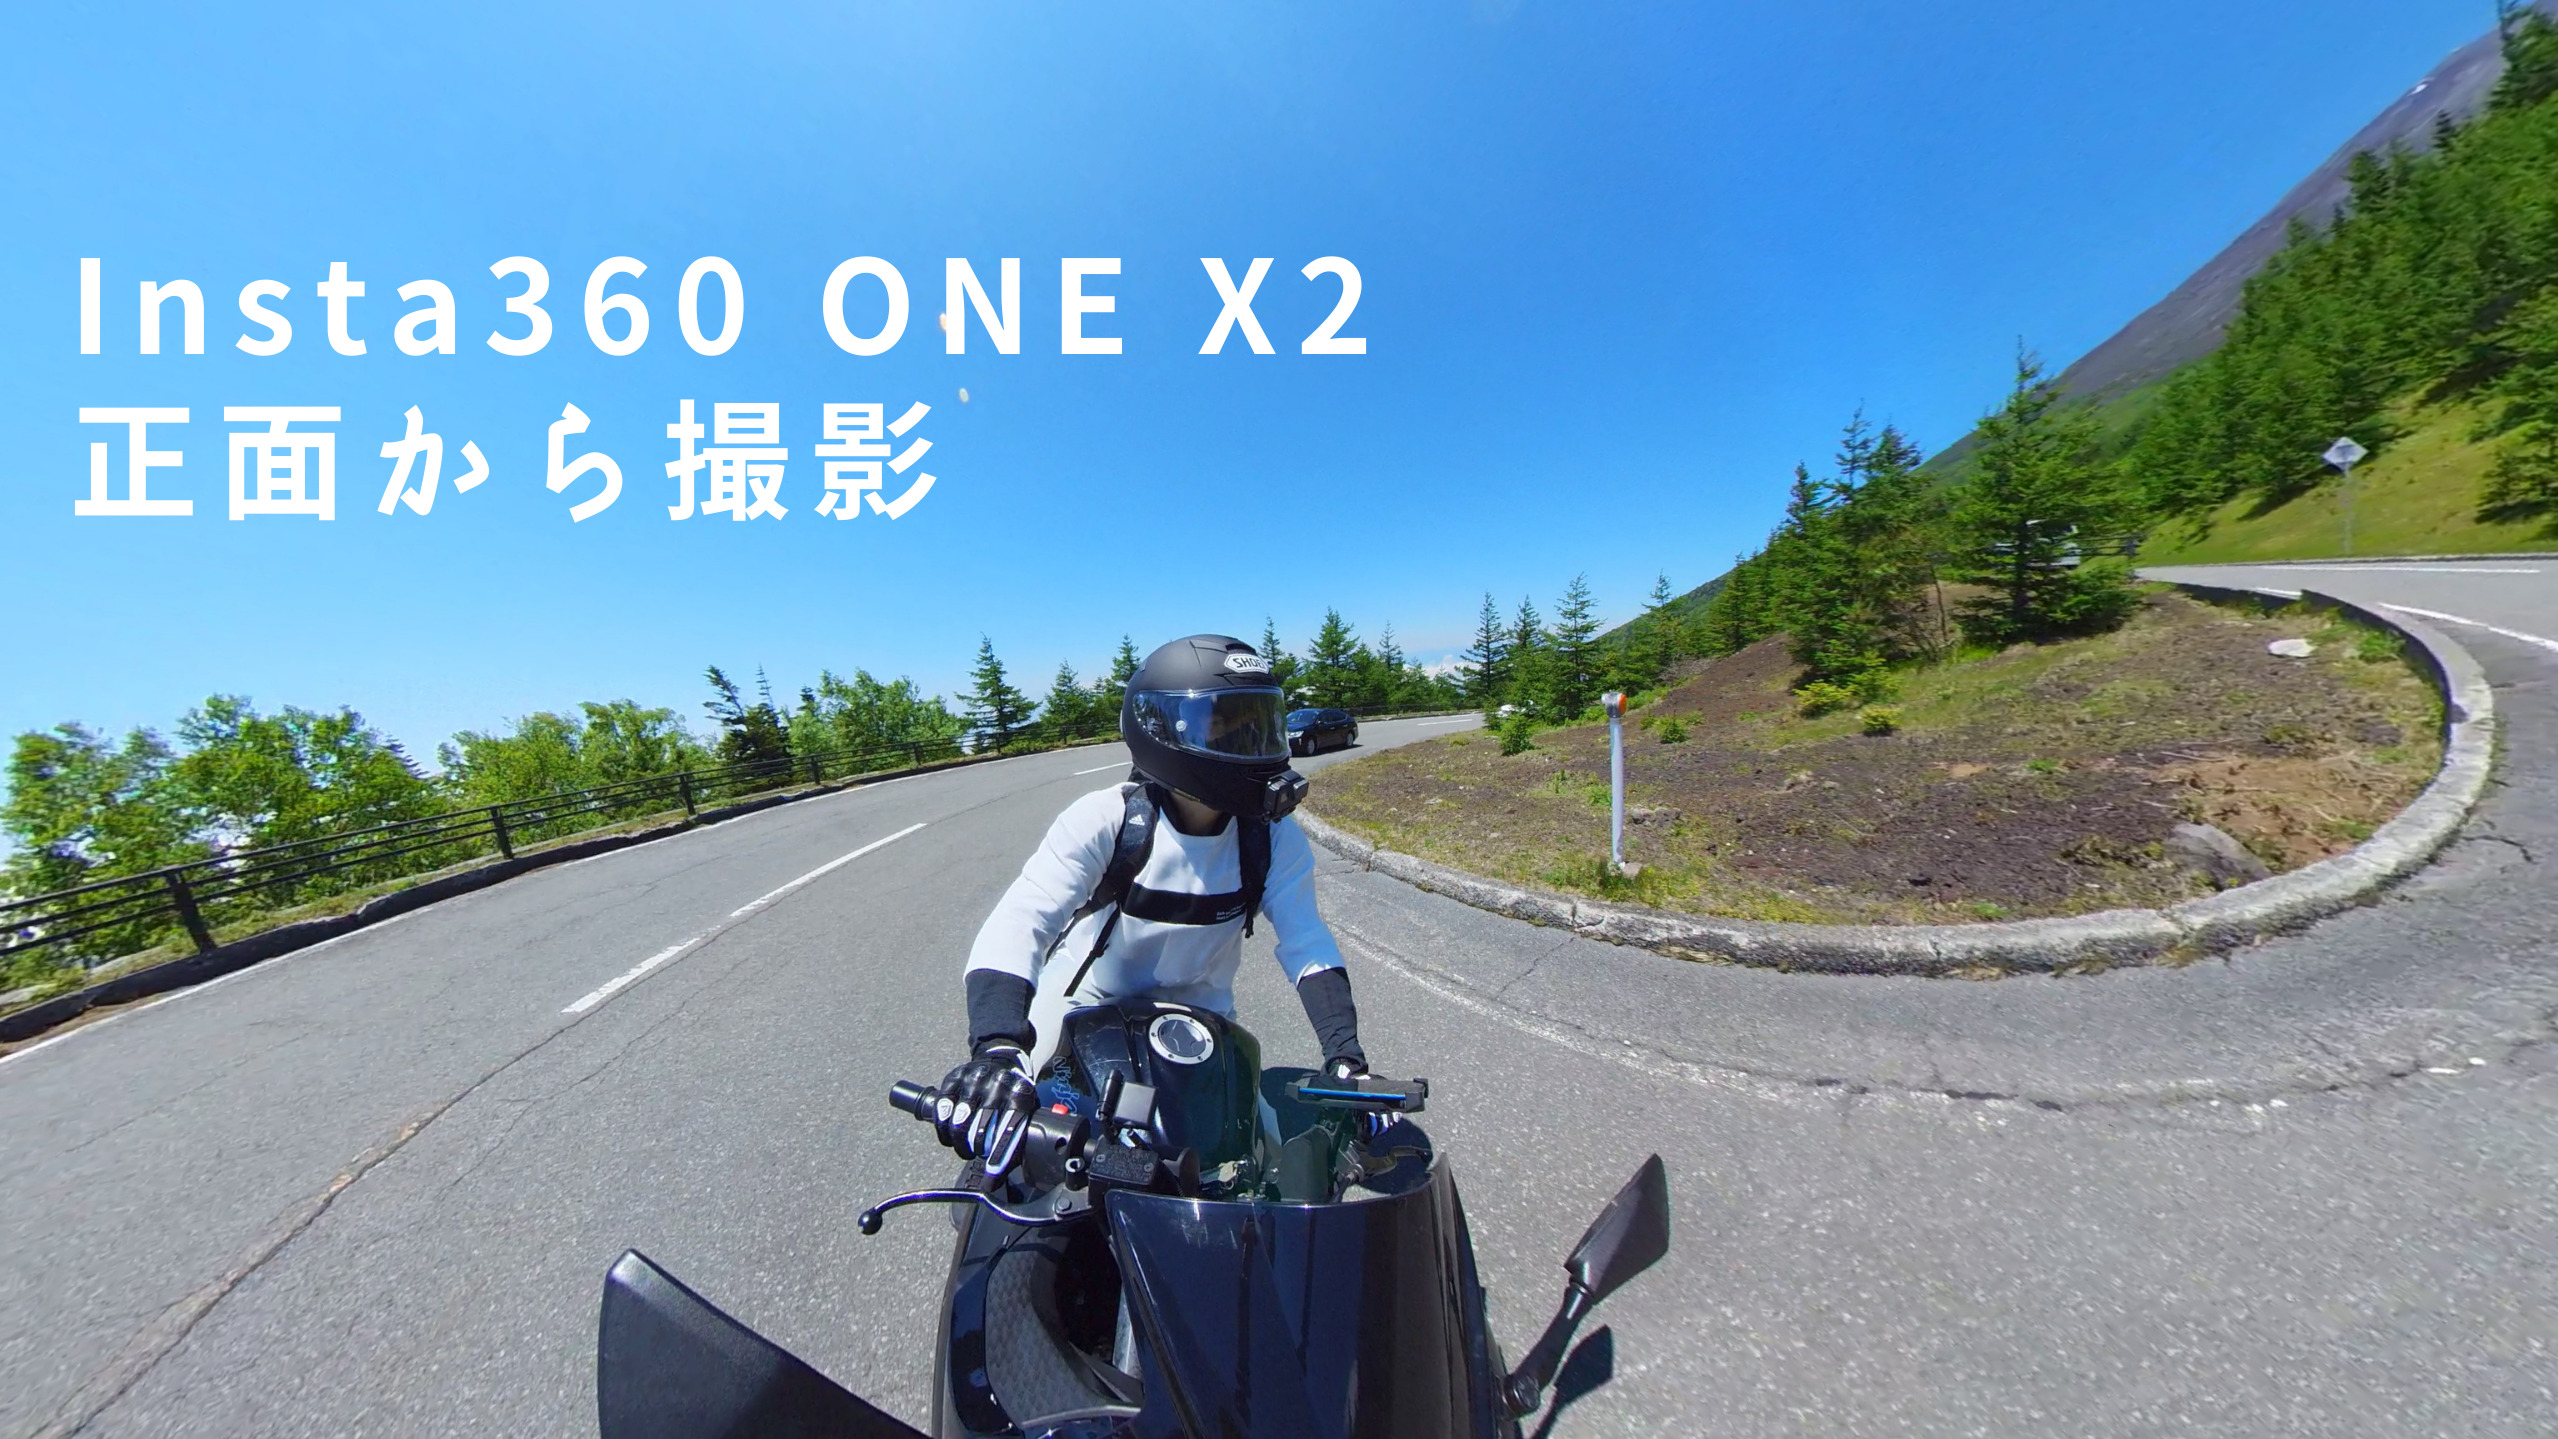 【新品豊富な】insta360 ONE X2 バイクマウント付き アクションカメラ・ウェアラブルカメラ